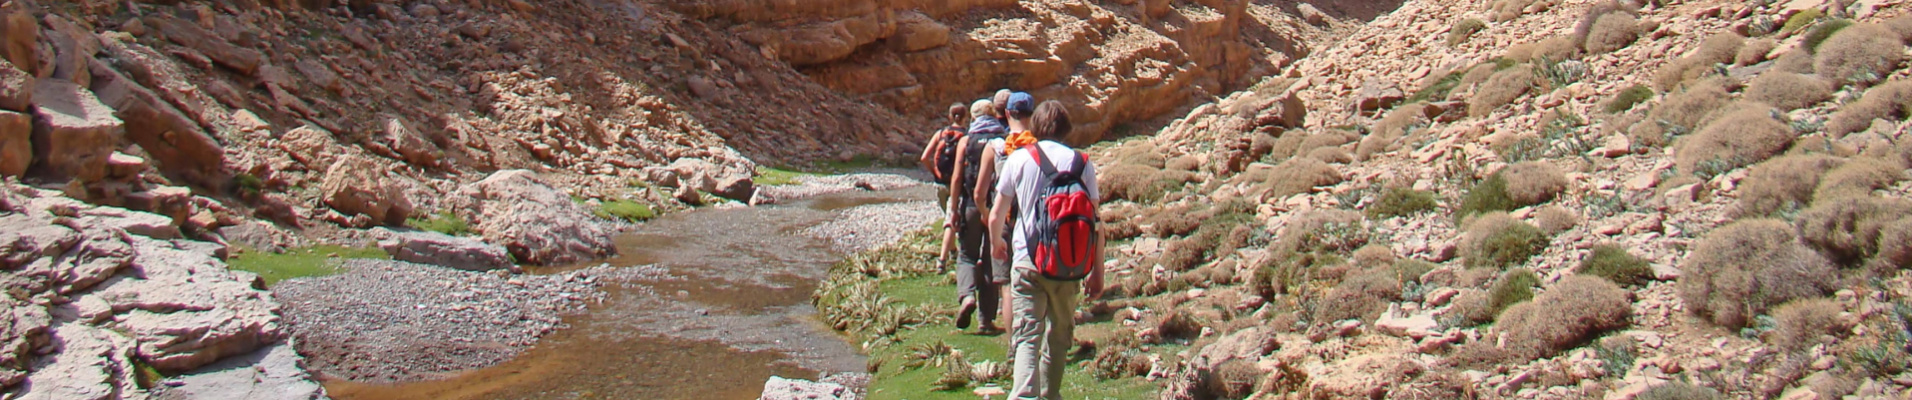 trekking-hiking-morocco